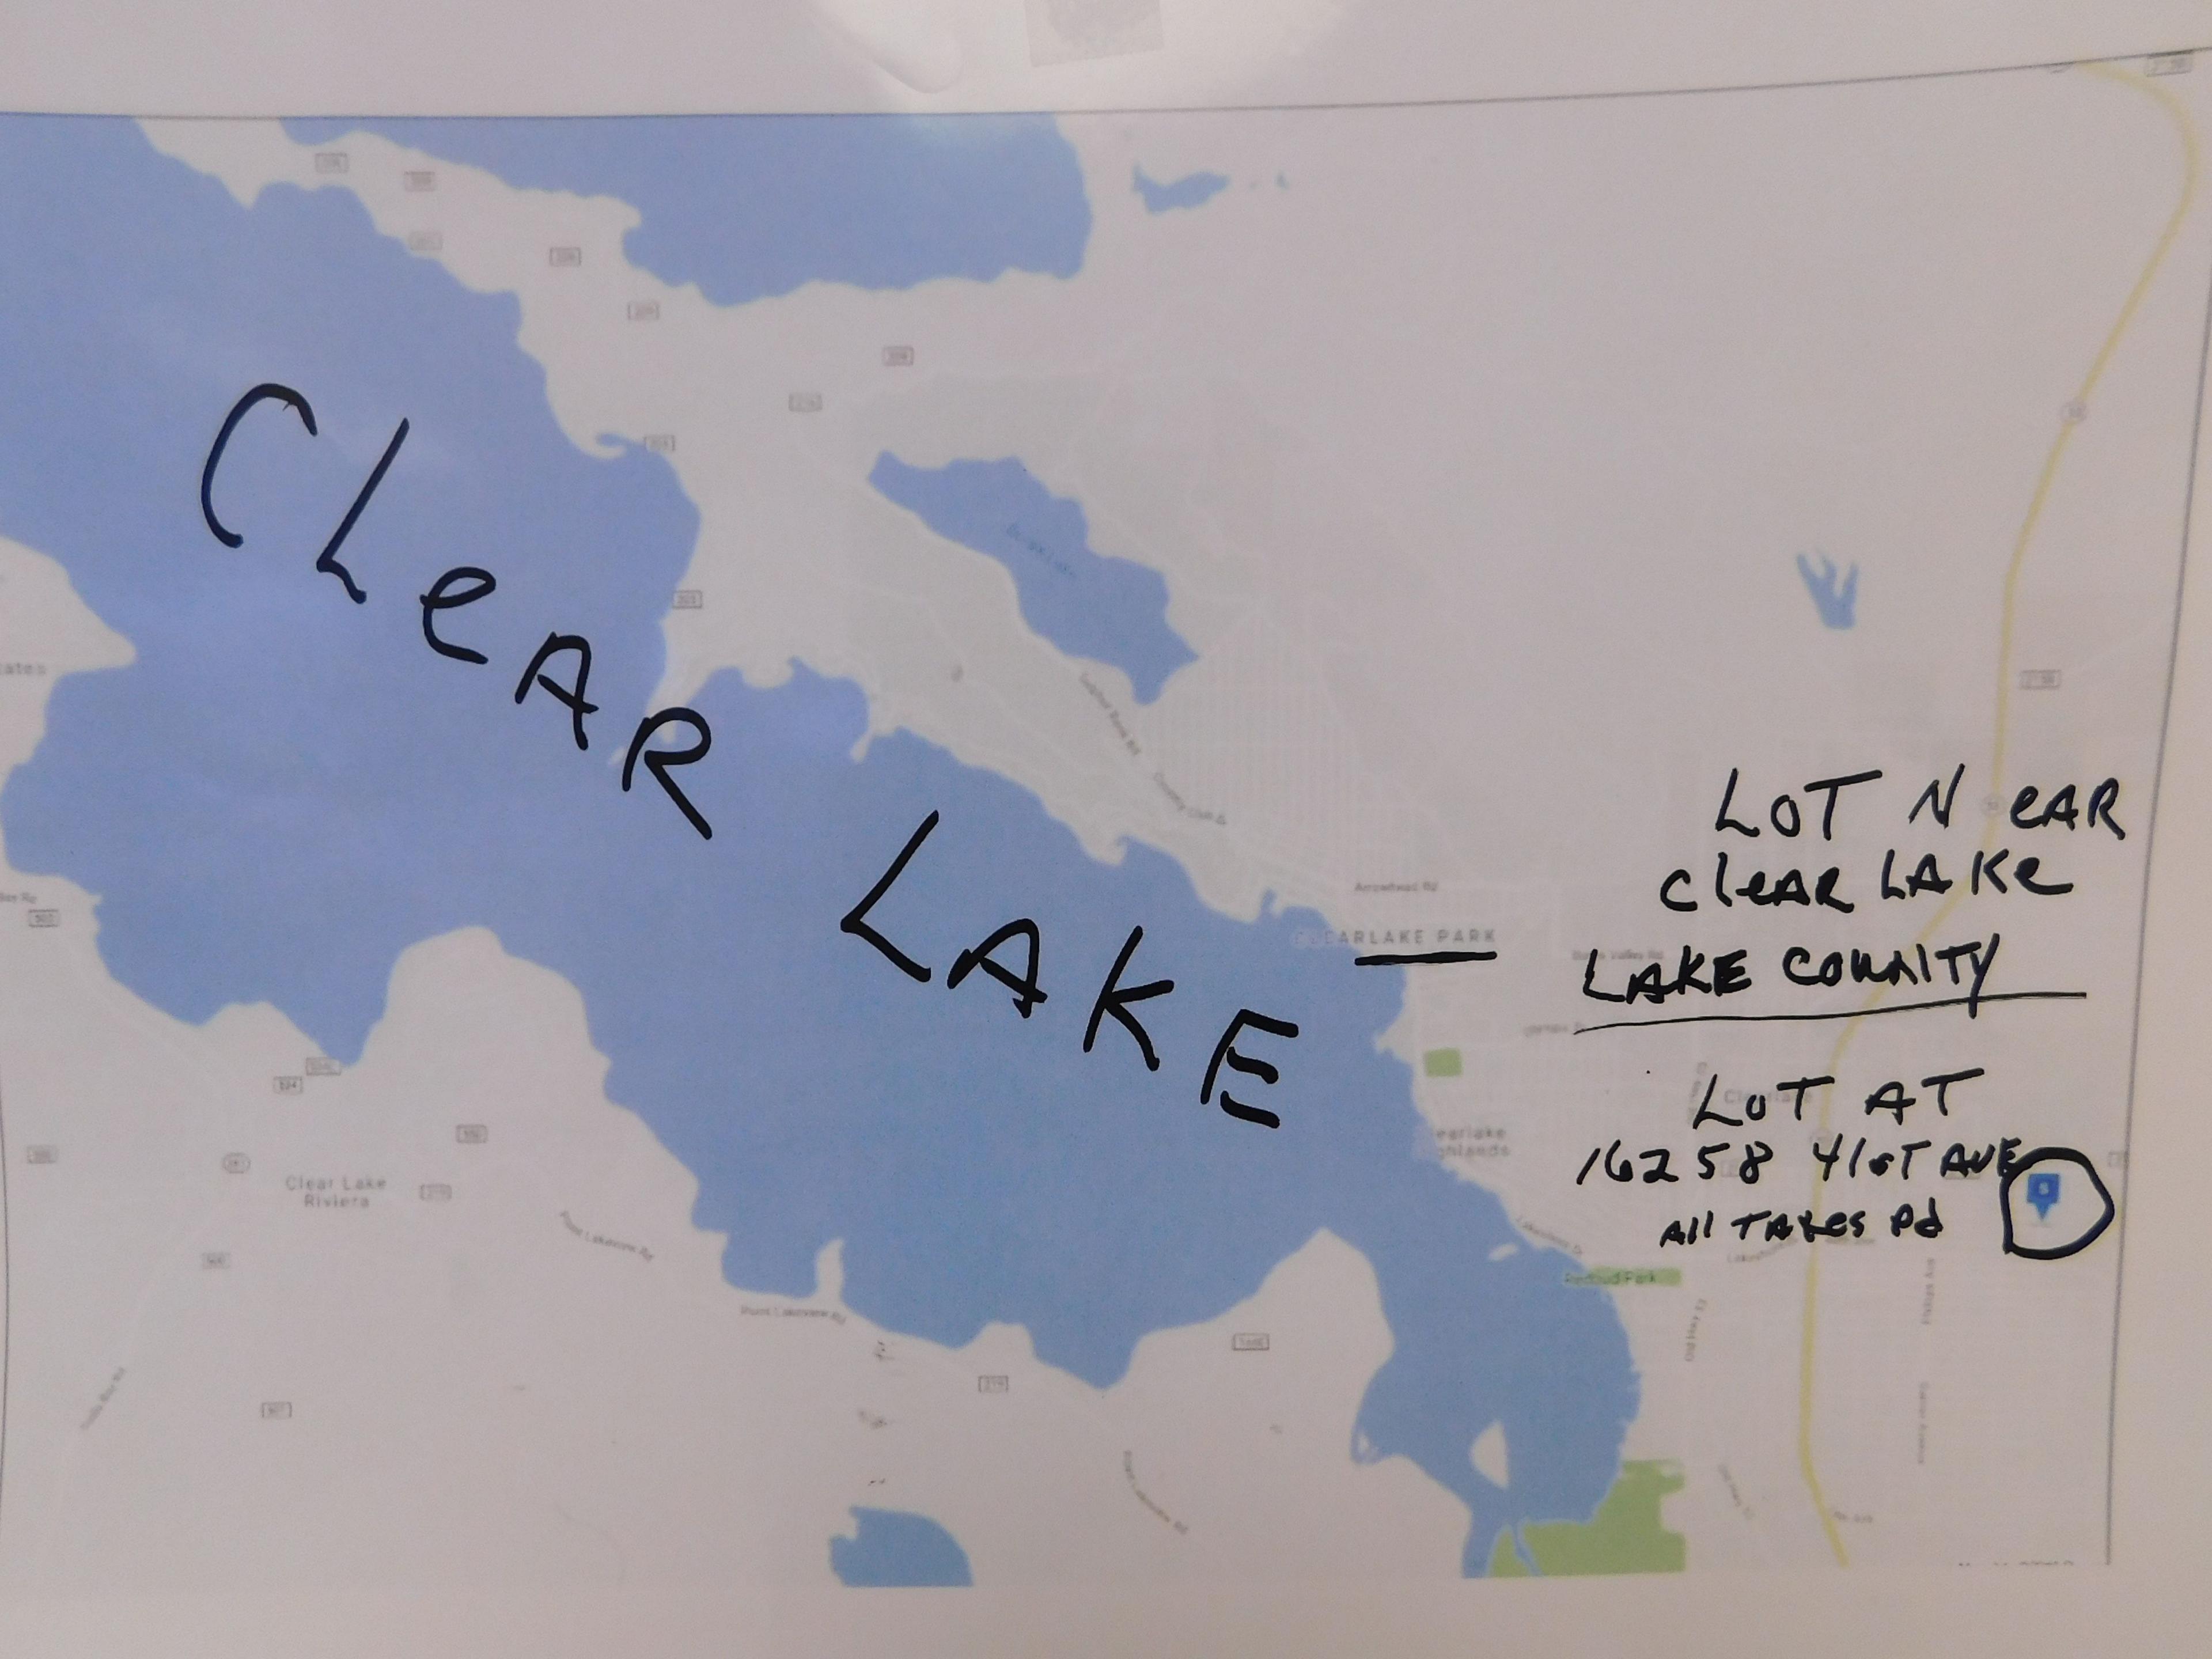 (1) LOT NEAR CLEAR LAKE